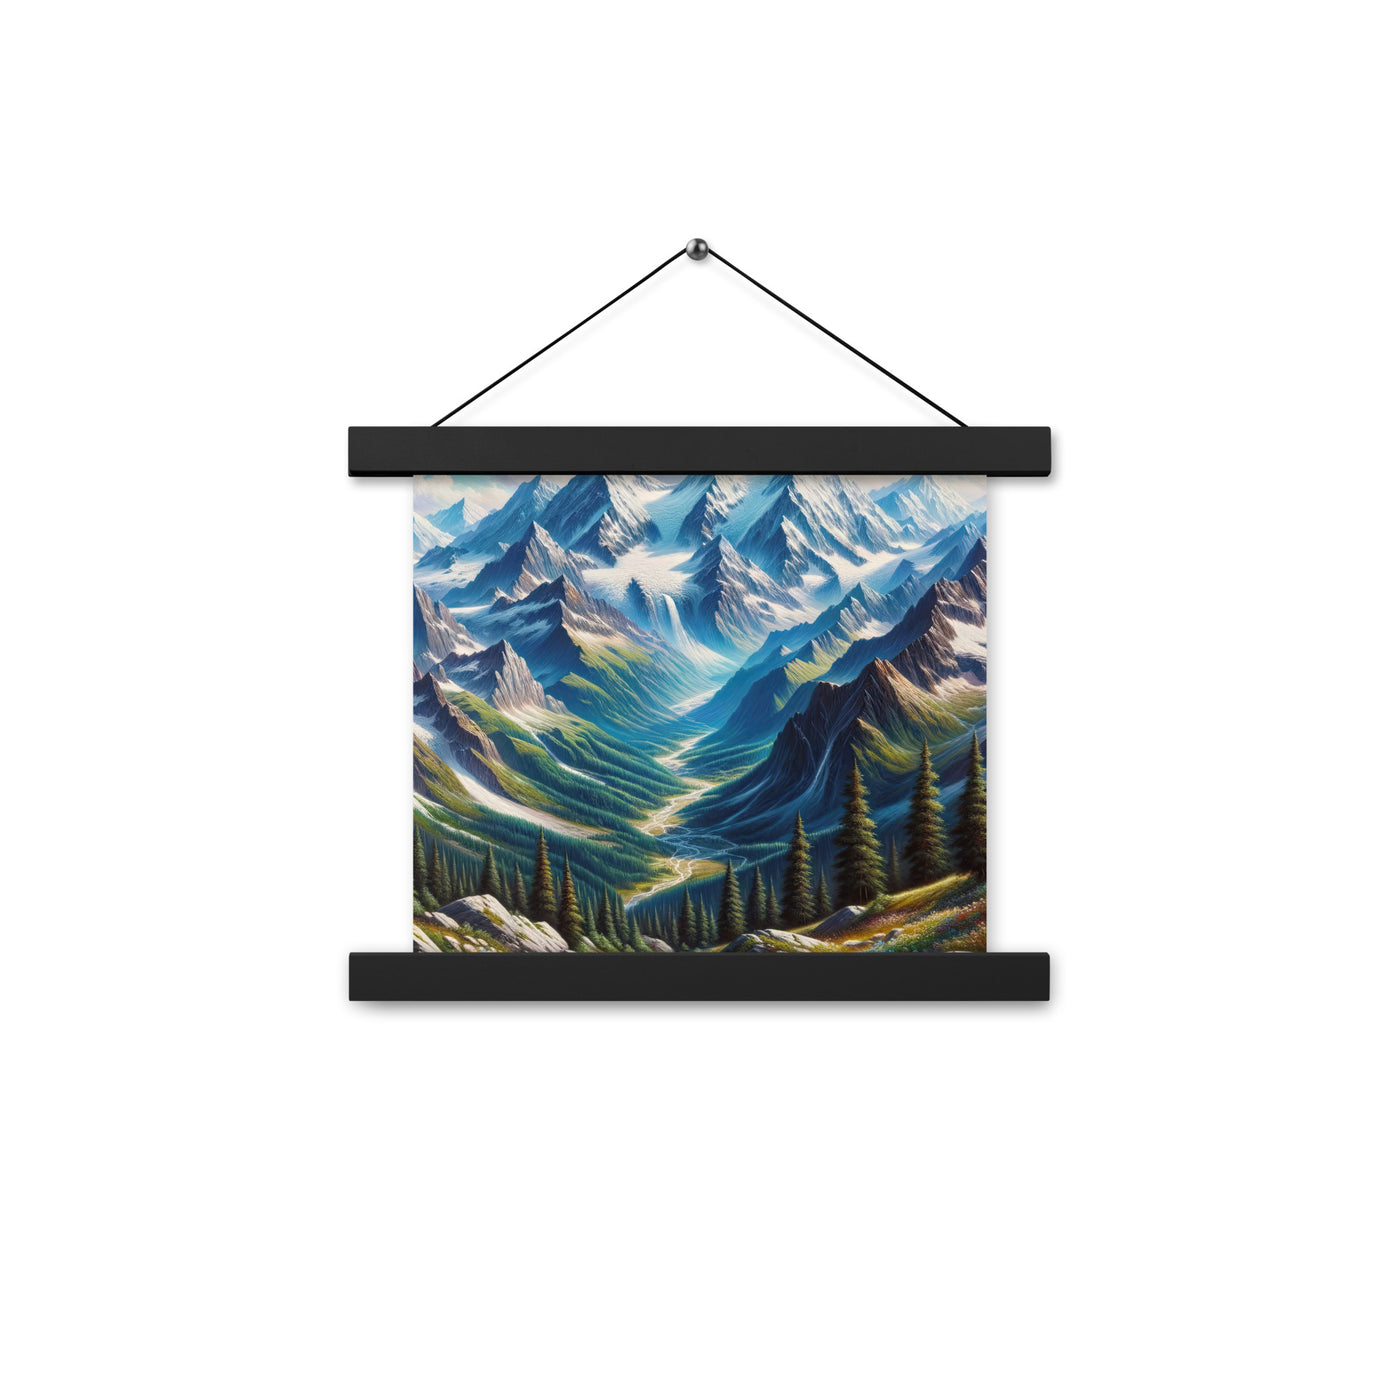 Panorama-Ölgemälde der Alpen mit schneebedeckten Gipfeln und schlängelnden Flusstälern - Premium Poster mit Aufhängung berge xxx yyy zzz 25.4 x 25.4 cm